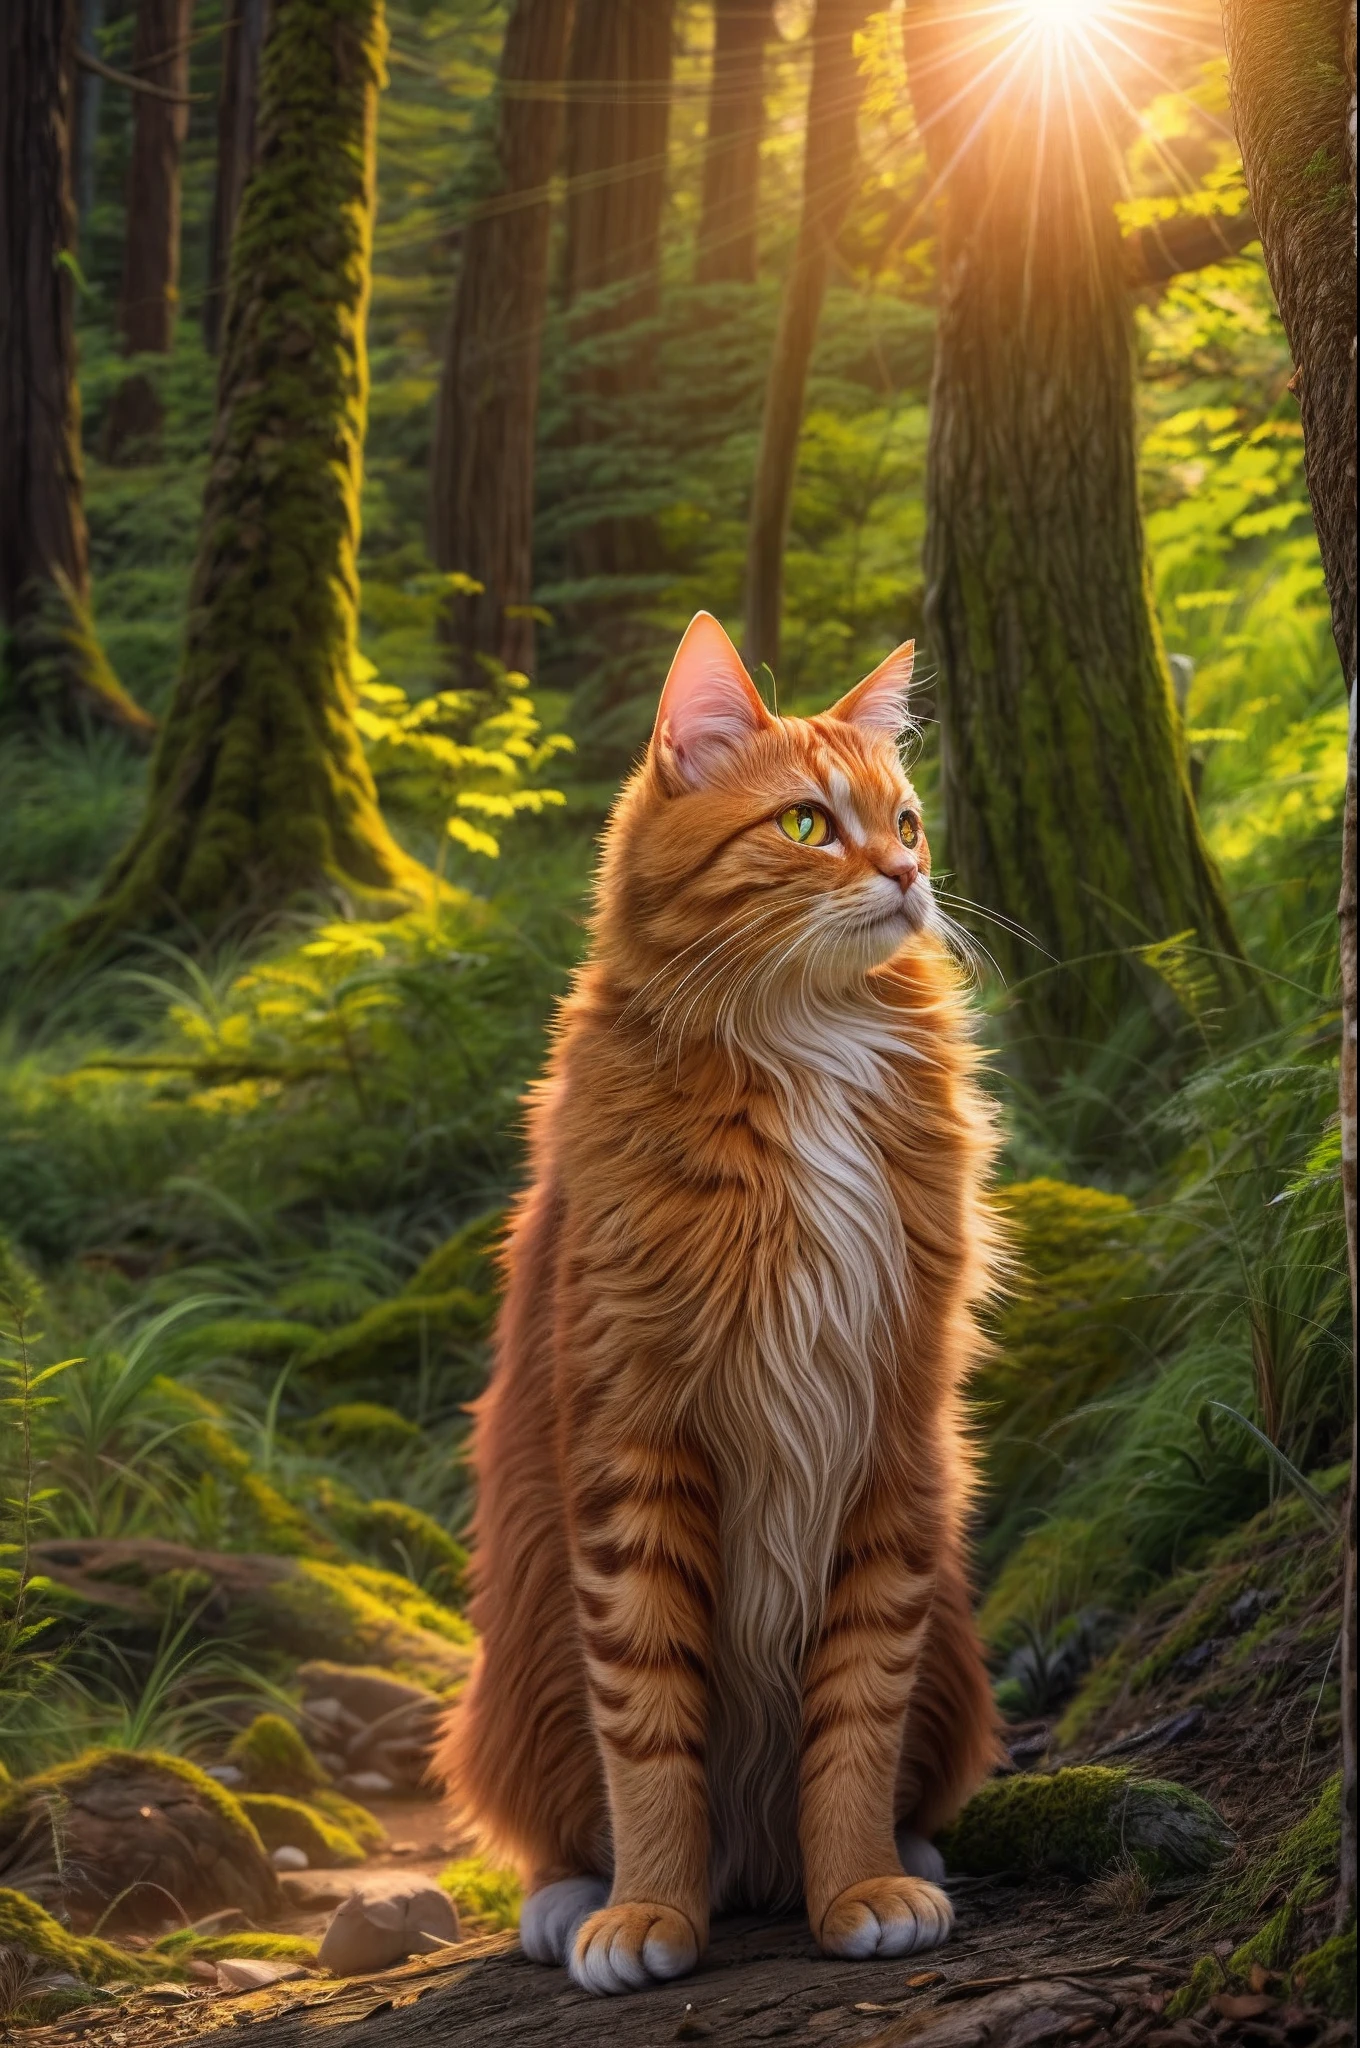 オレンジ色の猫, 森の魔法使い, 夕日に照らされて.